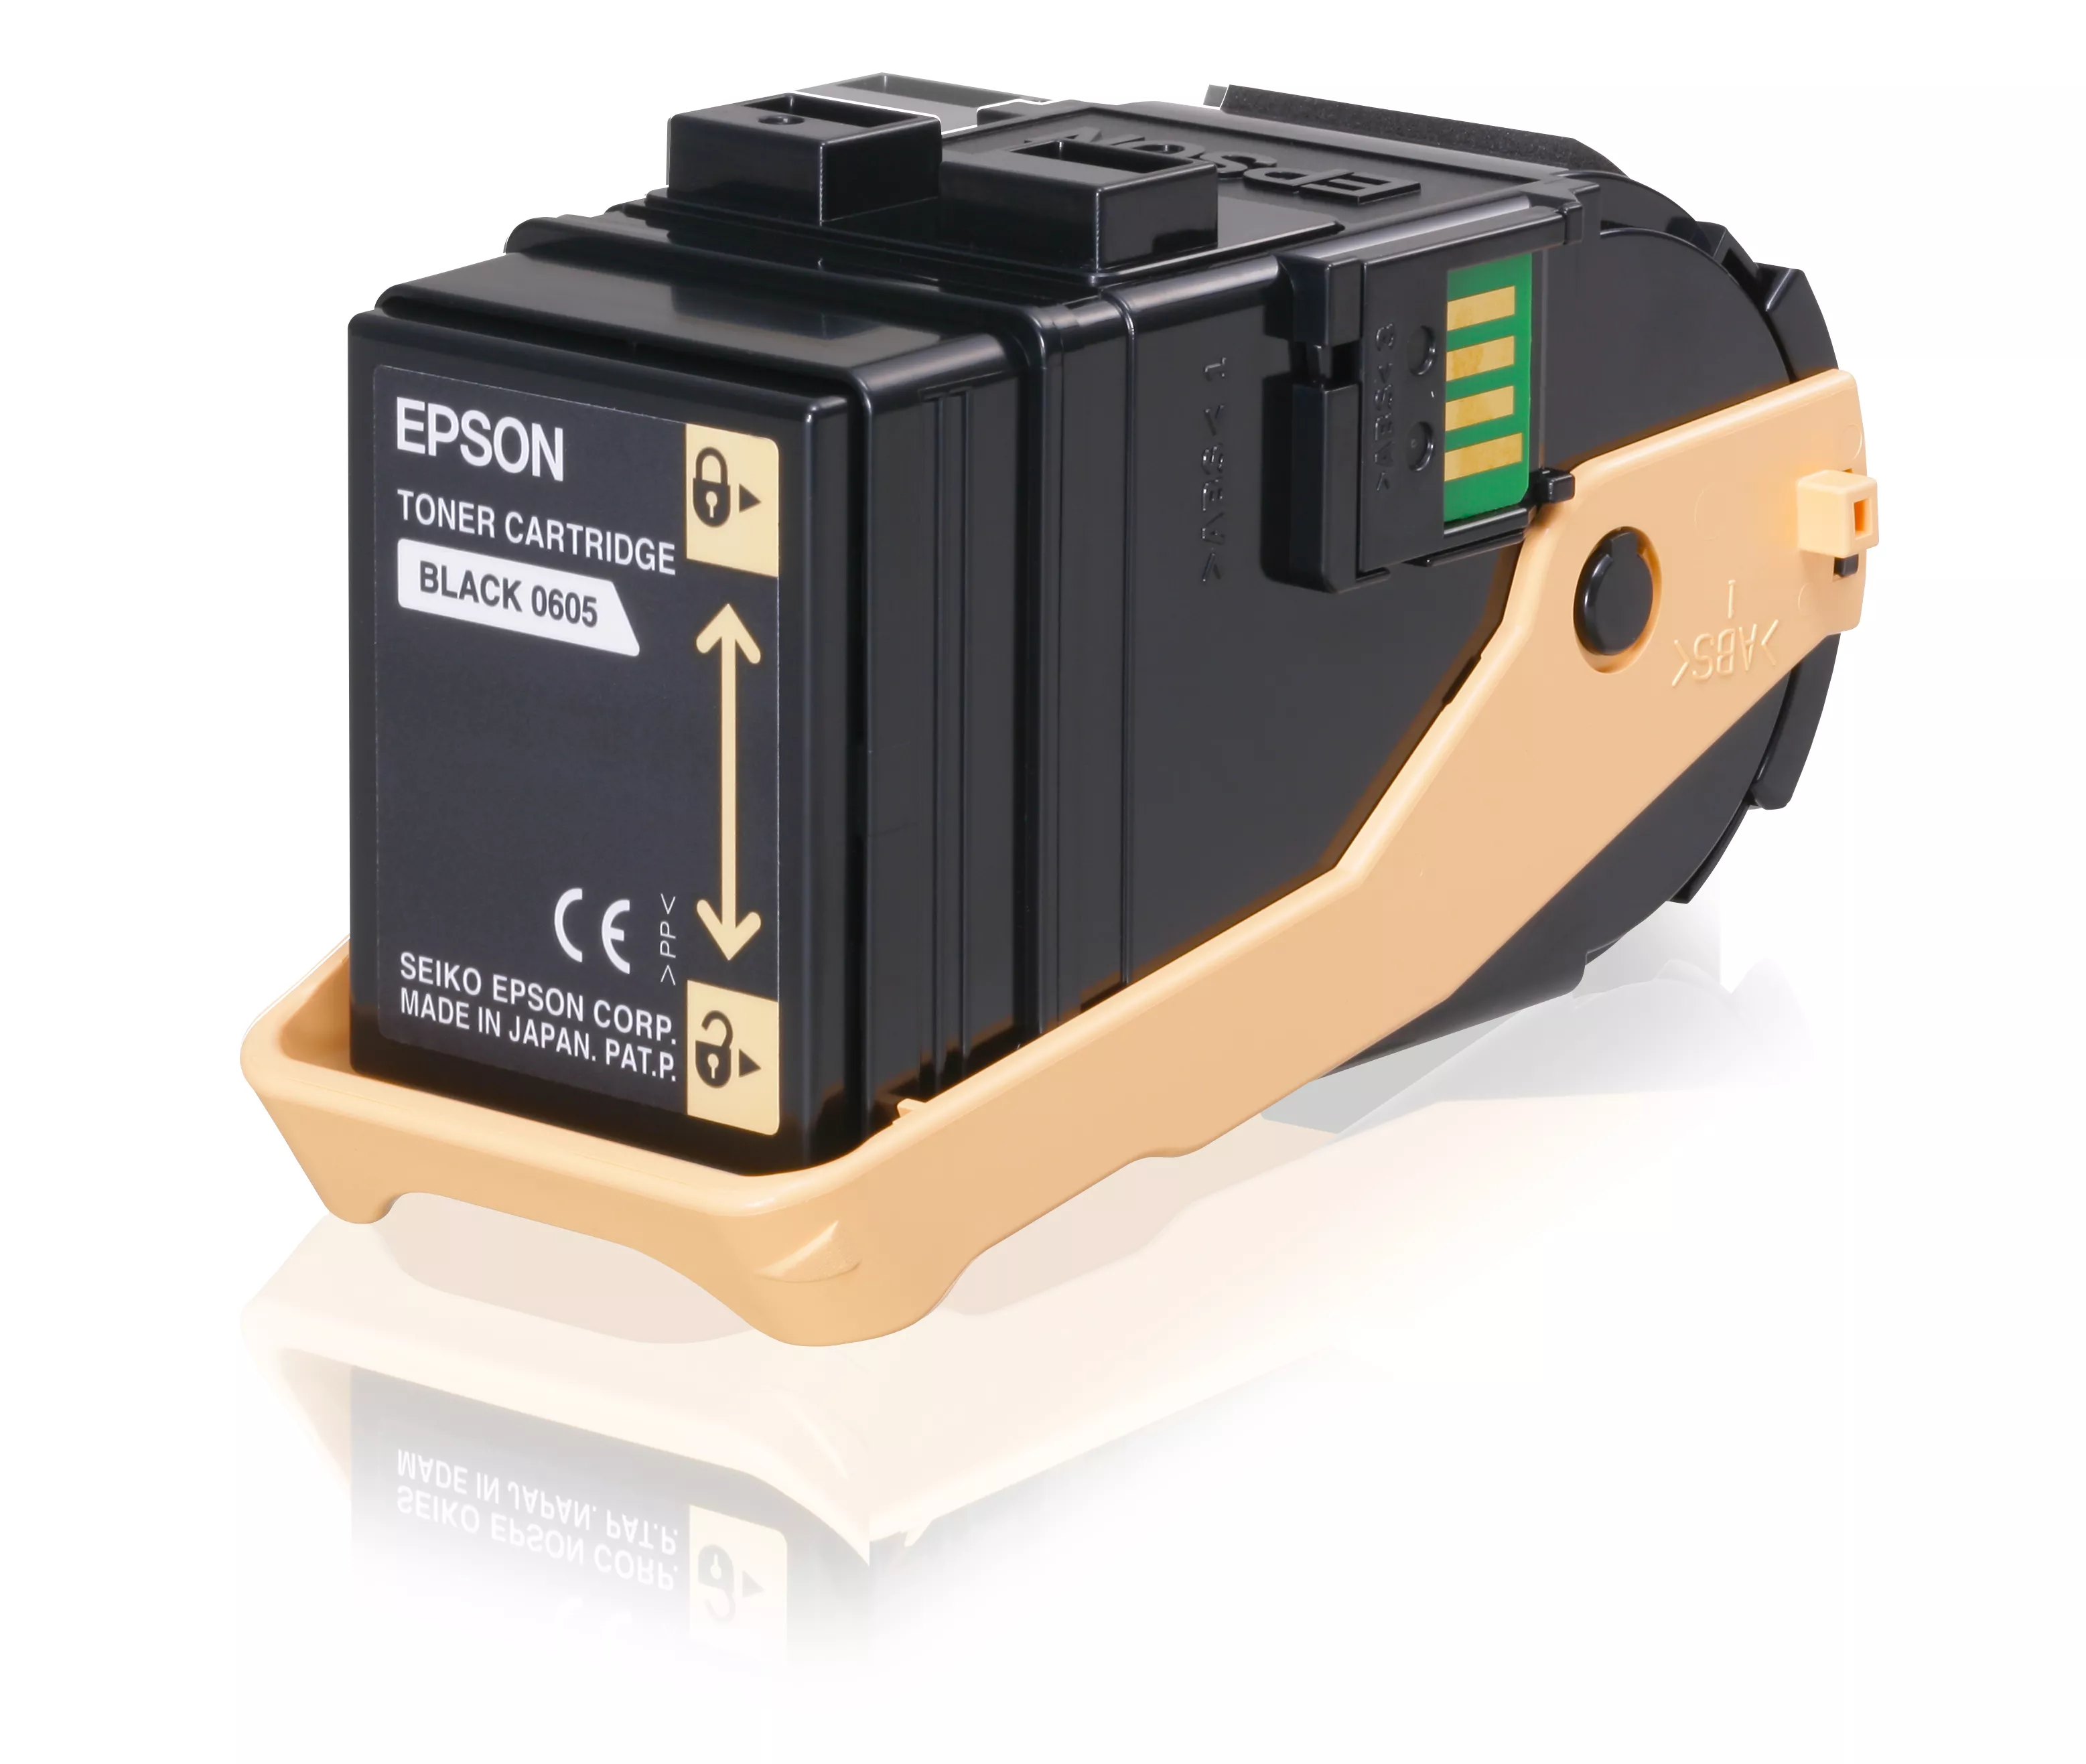 Achat EPSON AL-C9300N cartouche de toner noir capacité standard et autres produits de la marque Epson